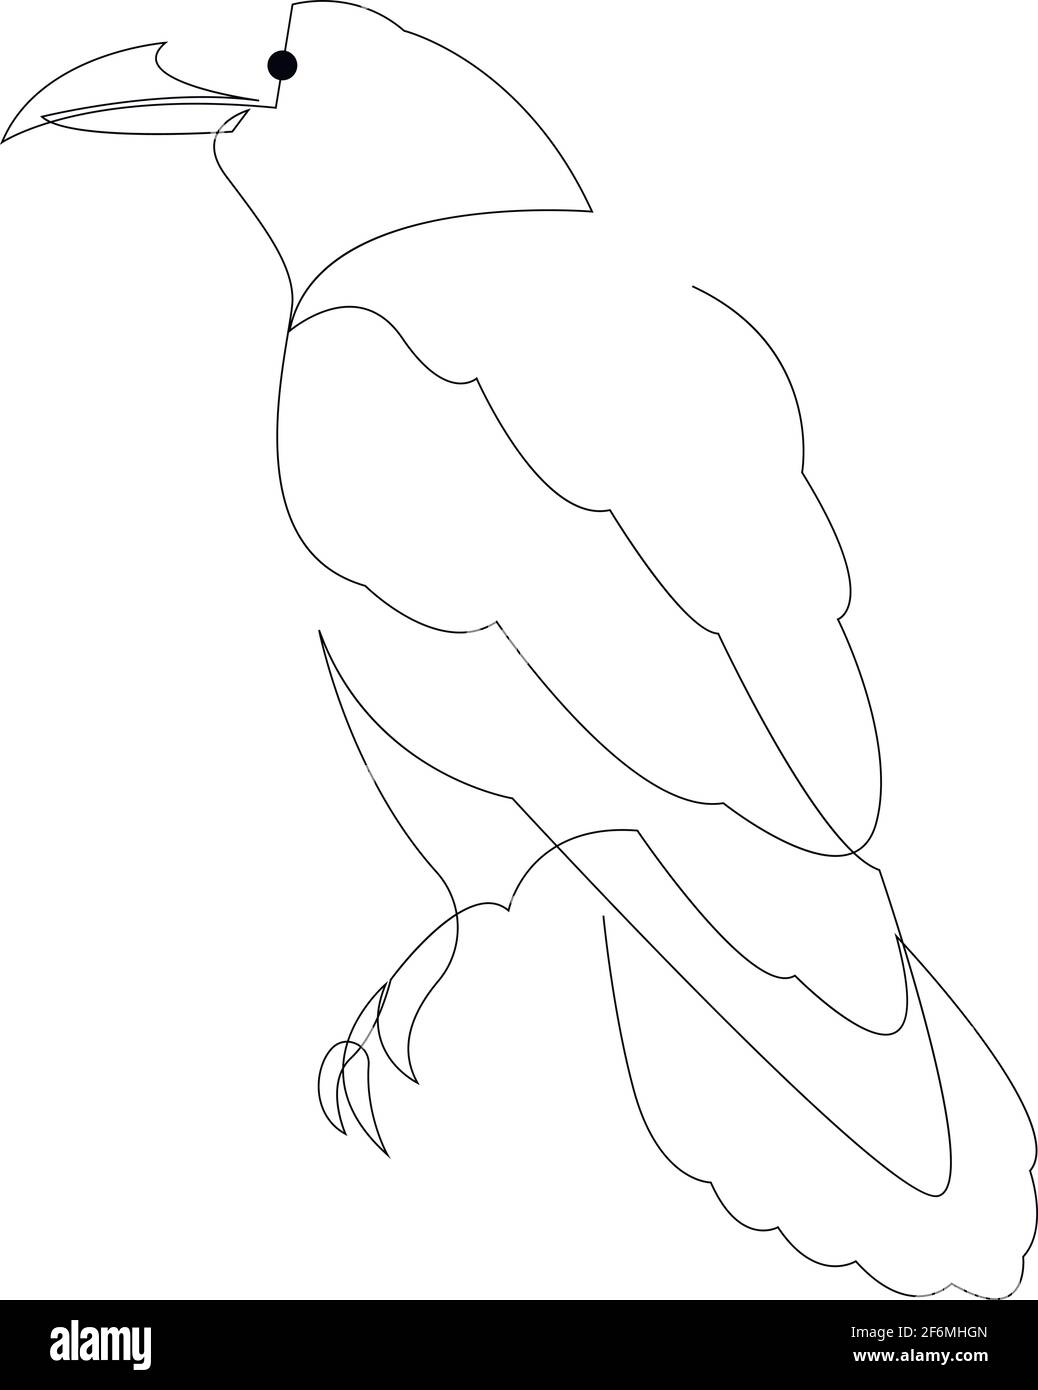 Ligne continue corbeau. Illustration du vecteur de corbeau de style minimal à une seule ligne. Dessin d'oiseau abstrait Illustration de Vecteur